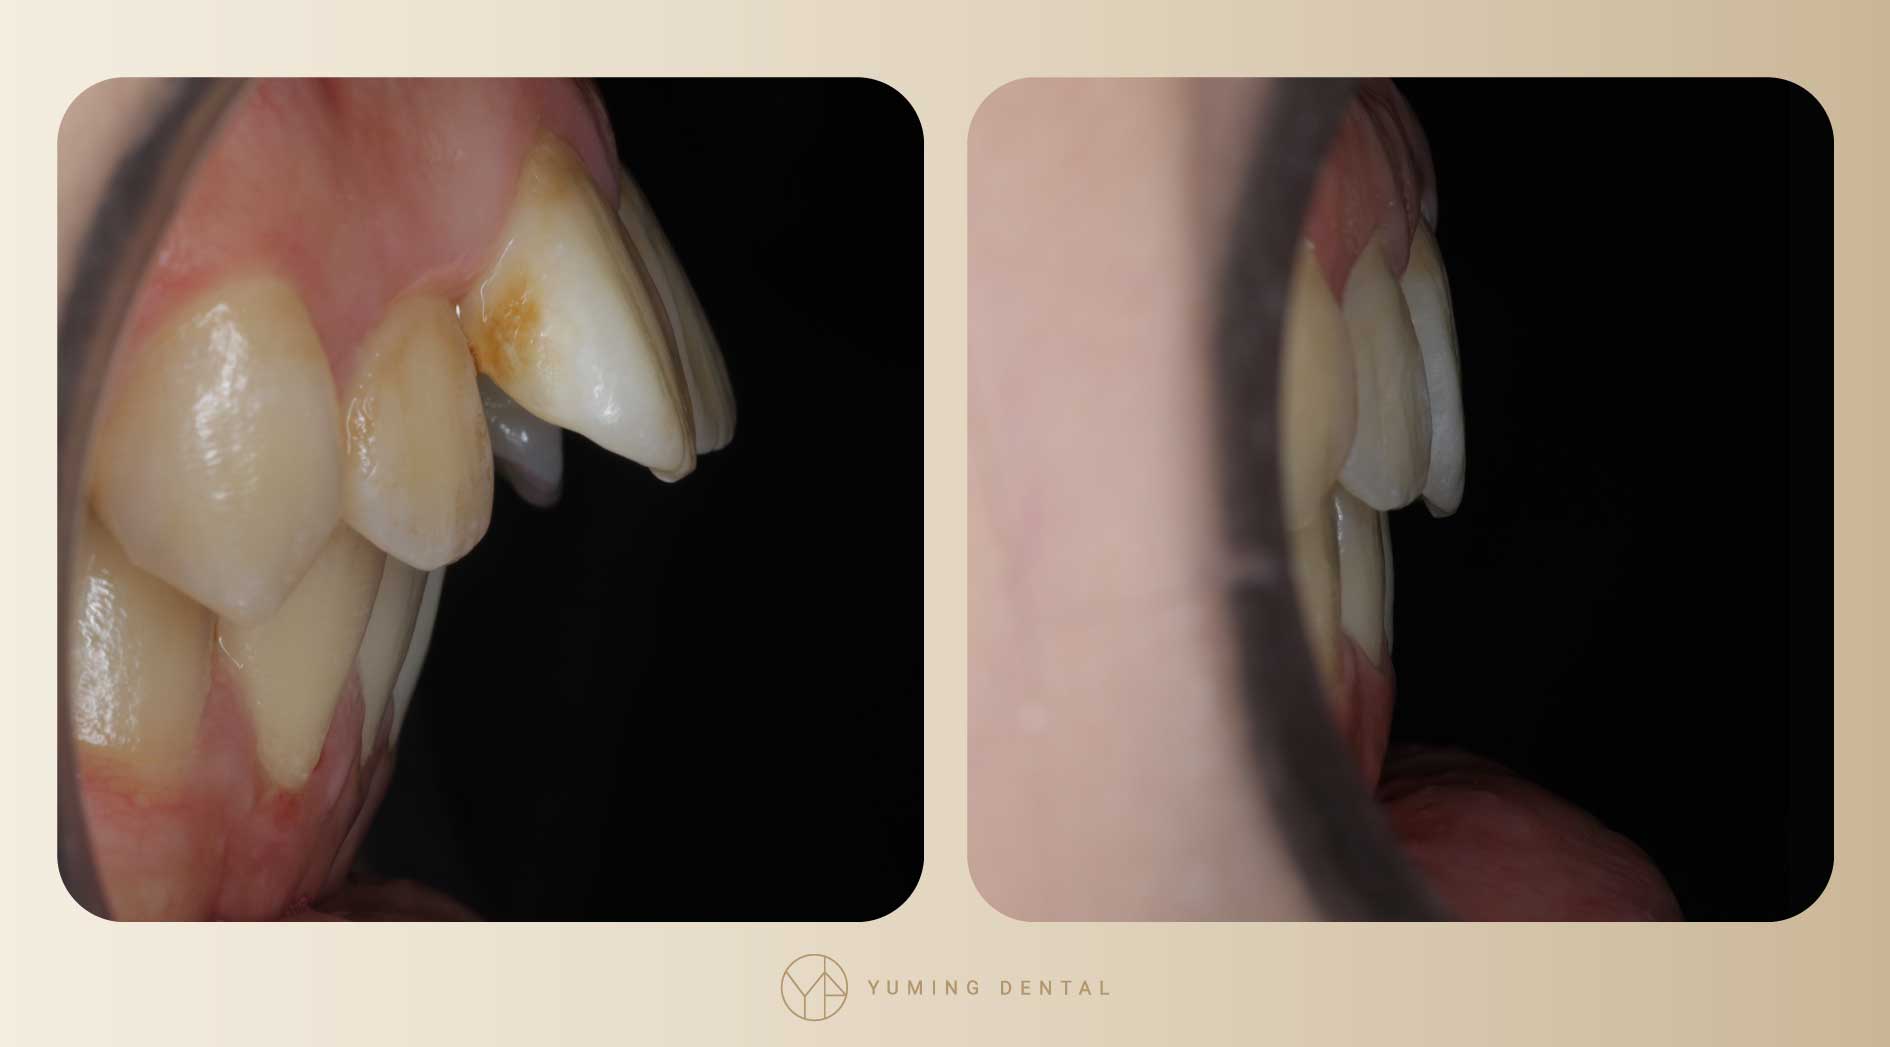 經過矯正後，暴牙情形改善許多，將原本外凸的牙齒往內收。